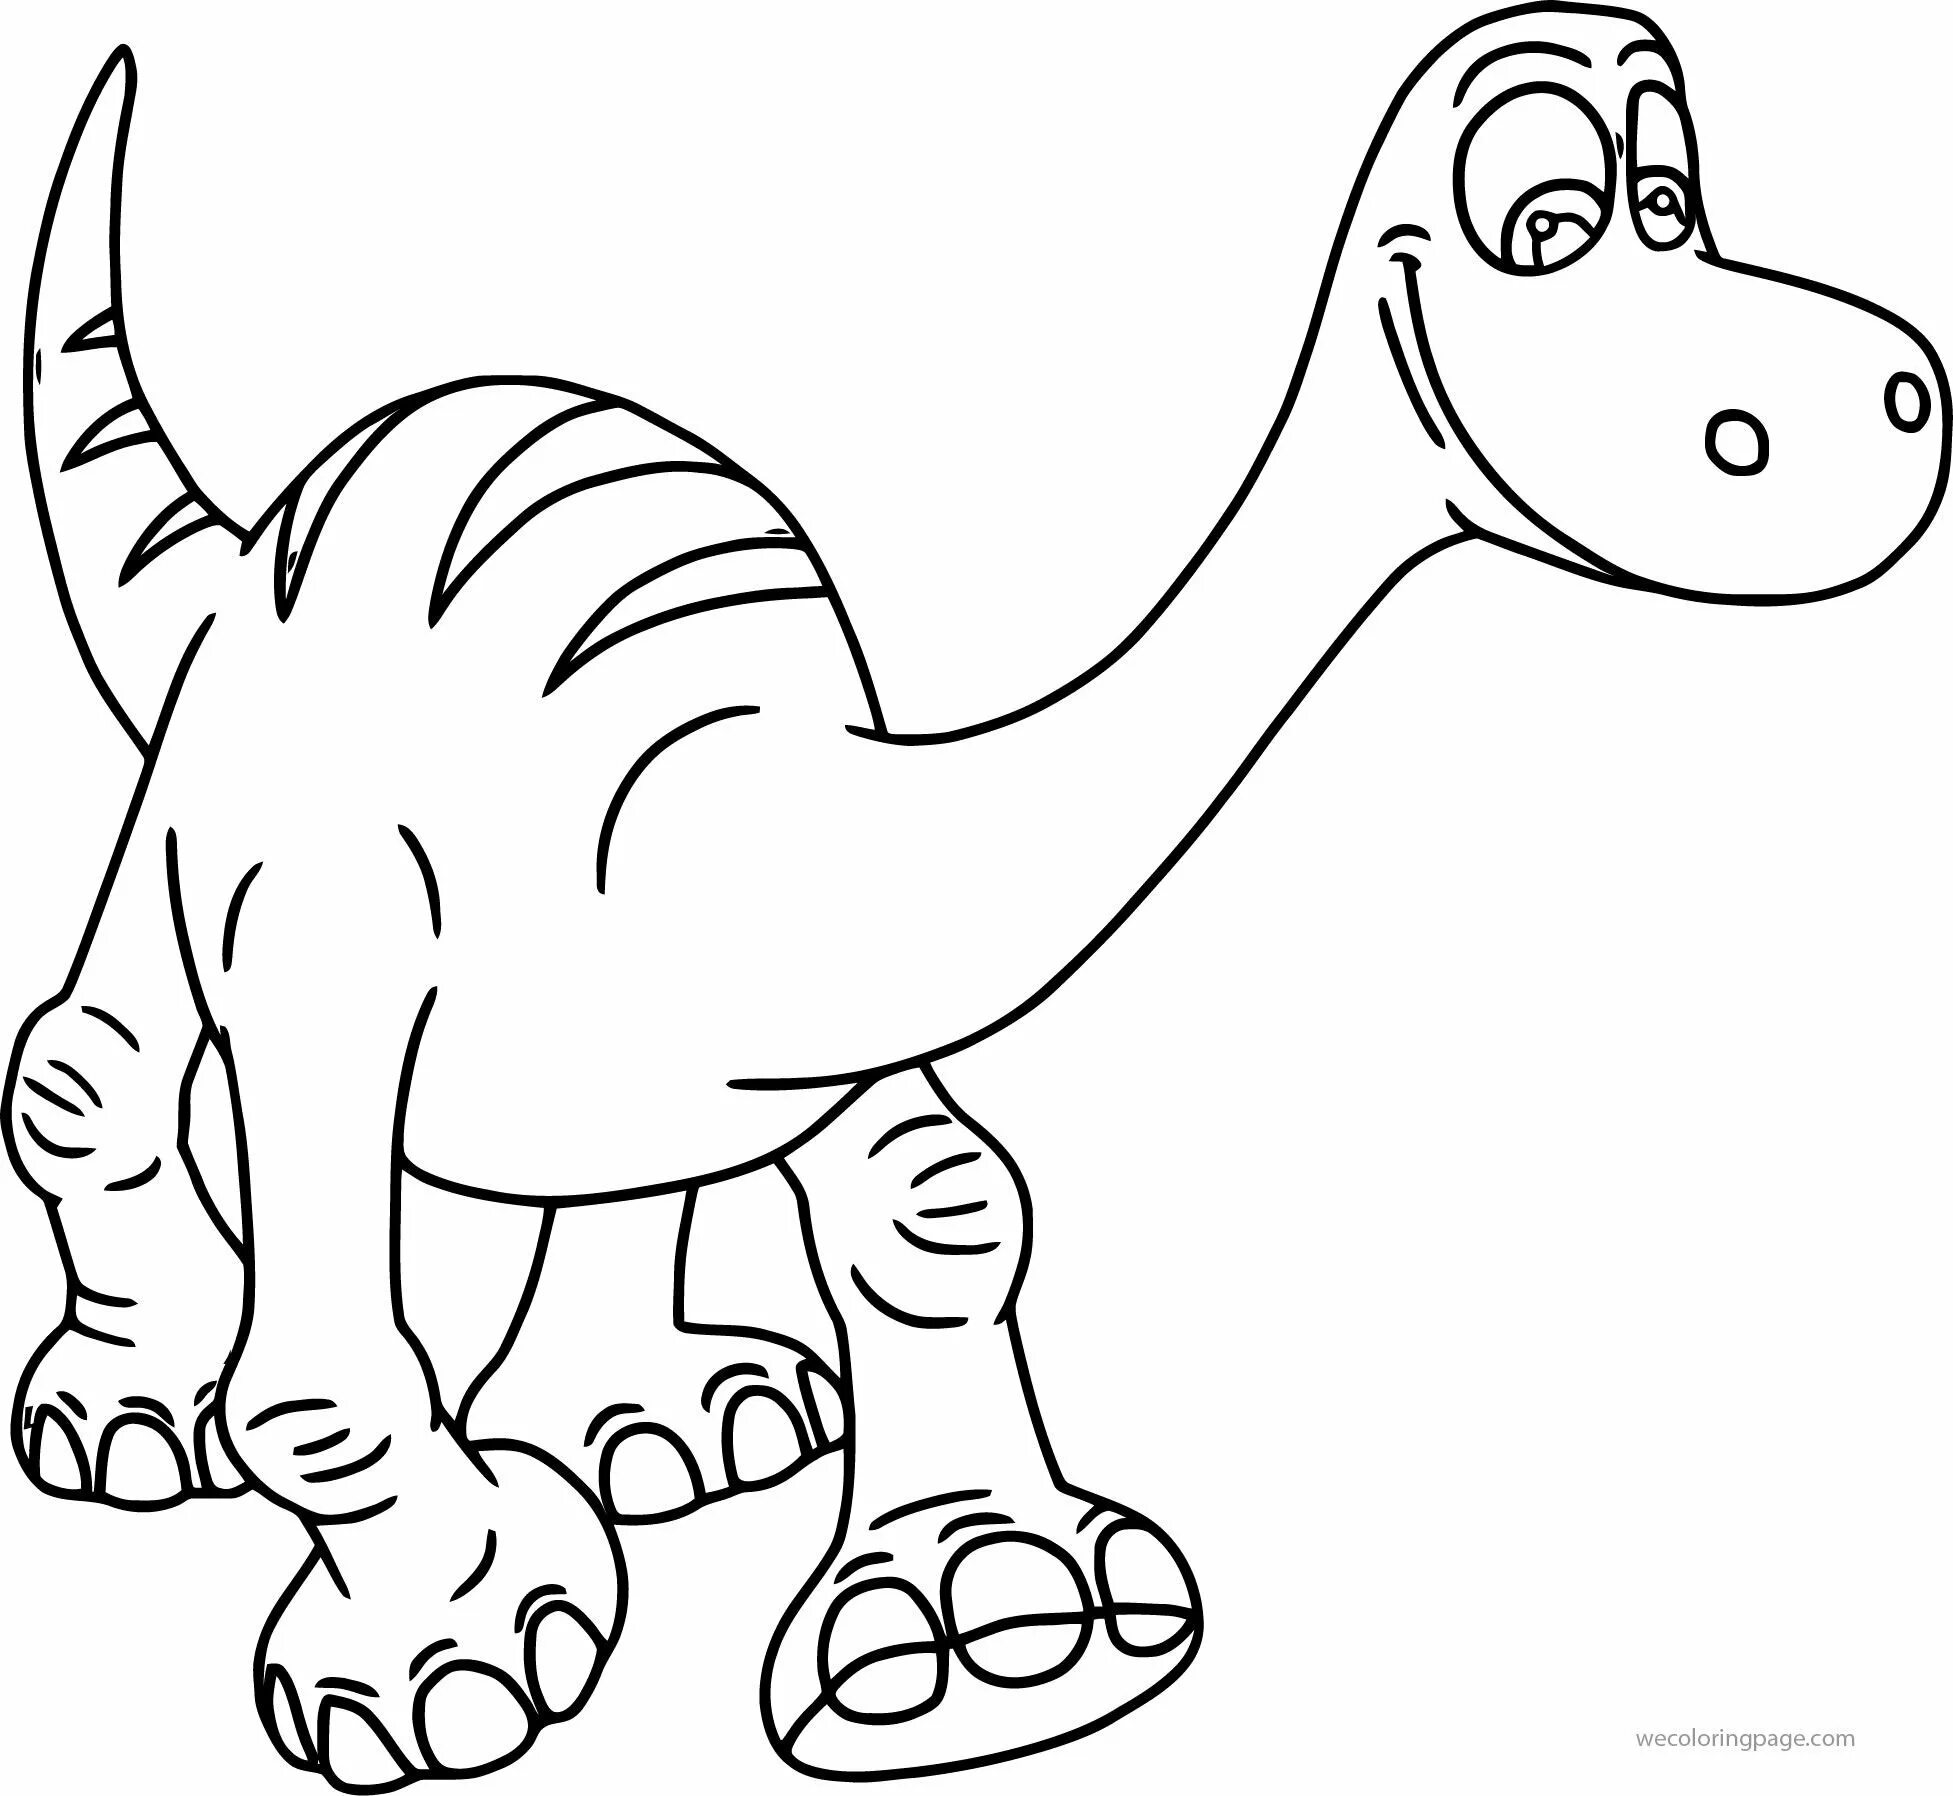 Раскраска динозавр формат а4. Динозавры / раскраска. Раскраска "Динозаврики". Динозавр раскраска для детей. Раскраски для мальчиков динозавры.